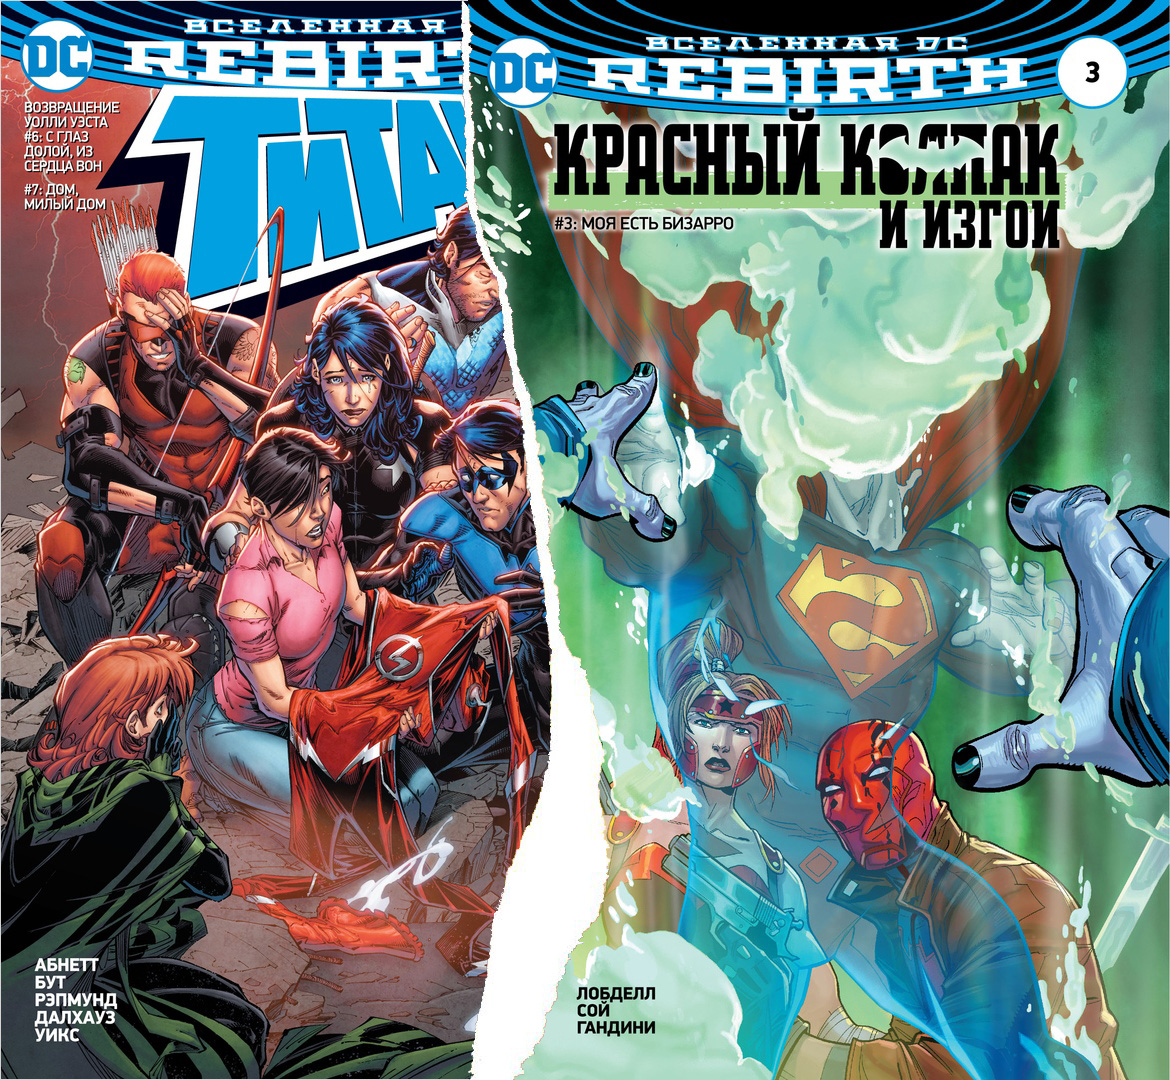 Комикс Вселенная DC Rebirth: Титаны. Выпуск № 6-7 / Красный колпак и Изгои. Выпуск № 3